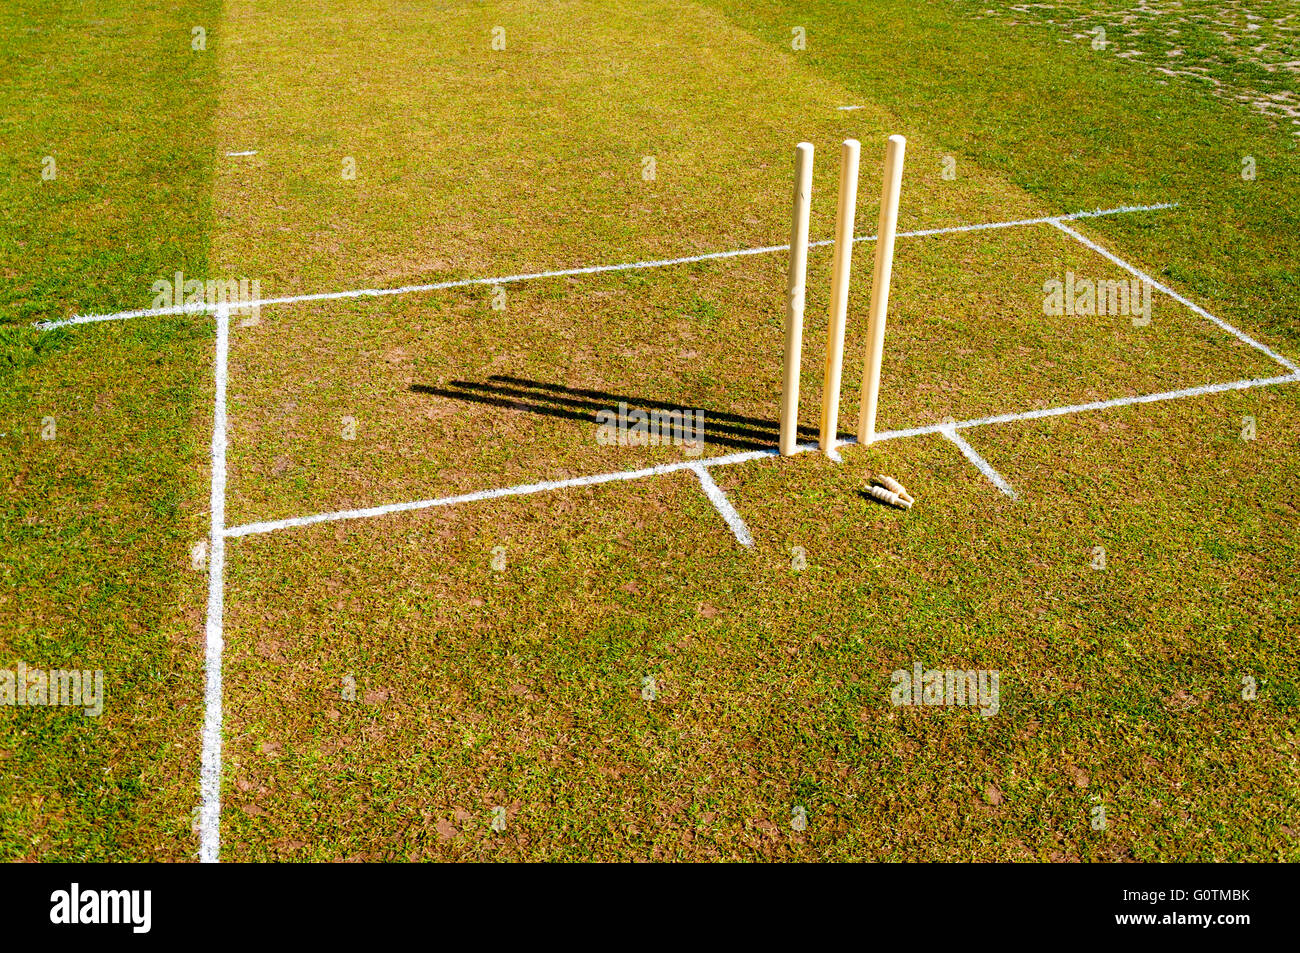 Cricket wicket Stock Photo